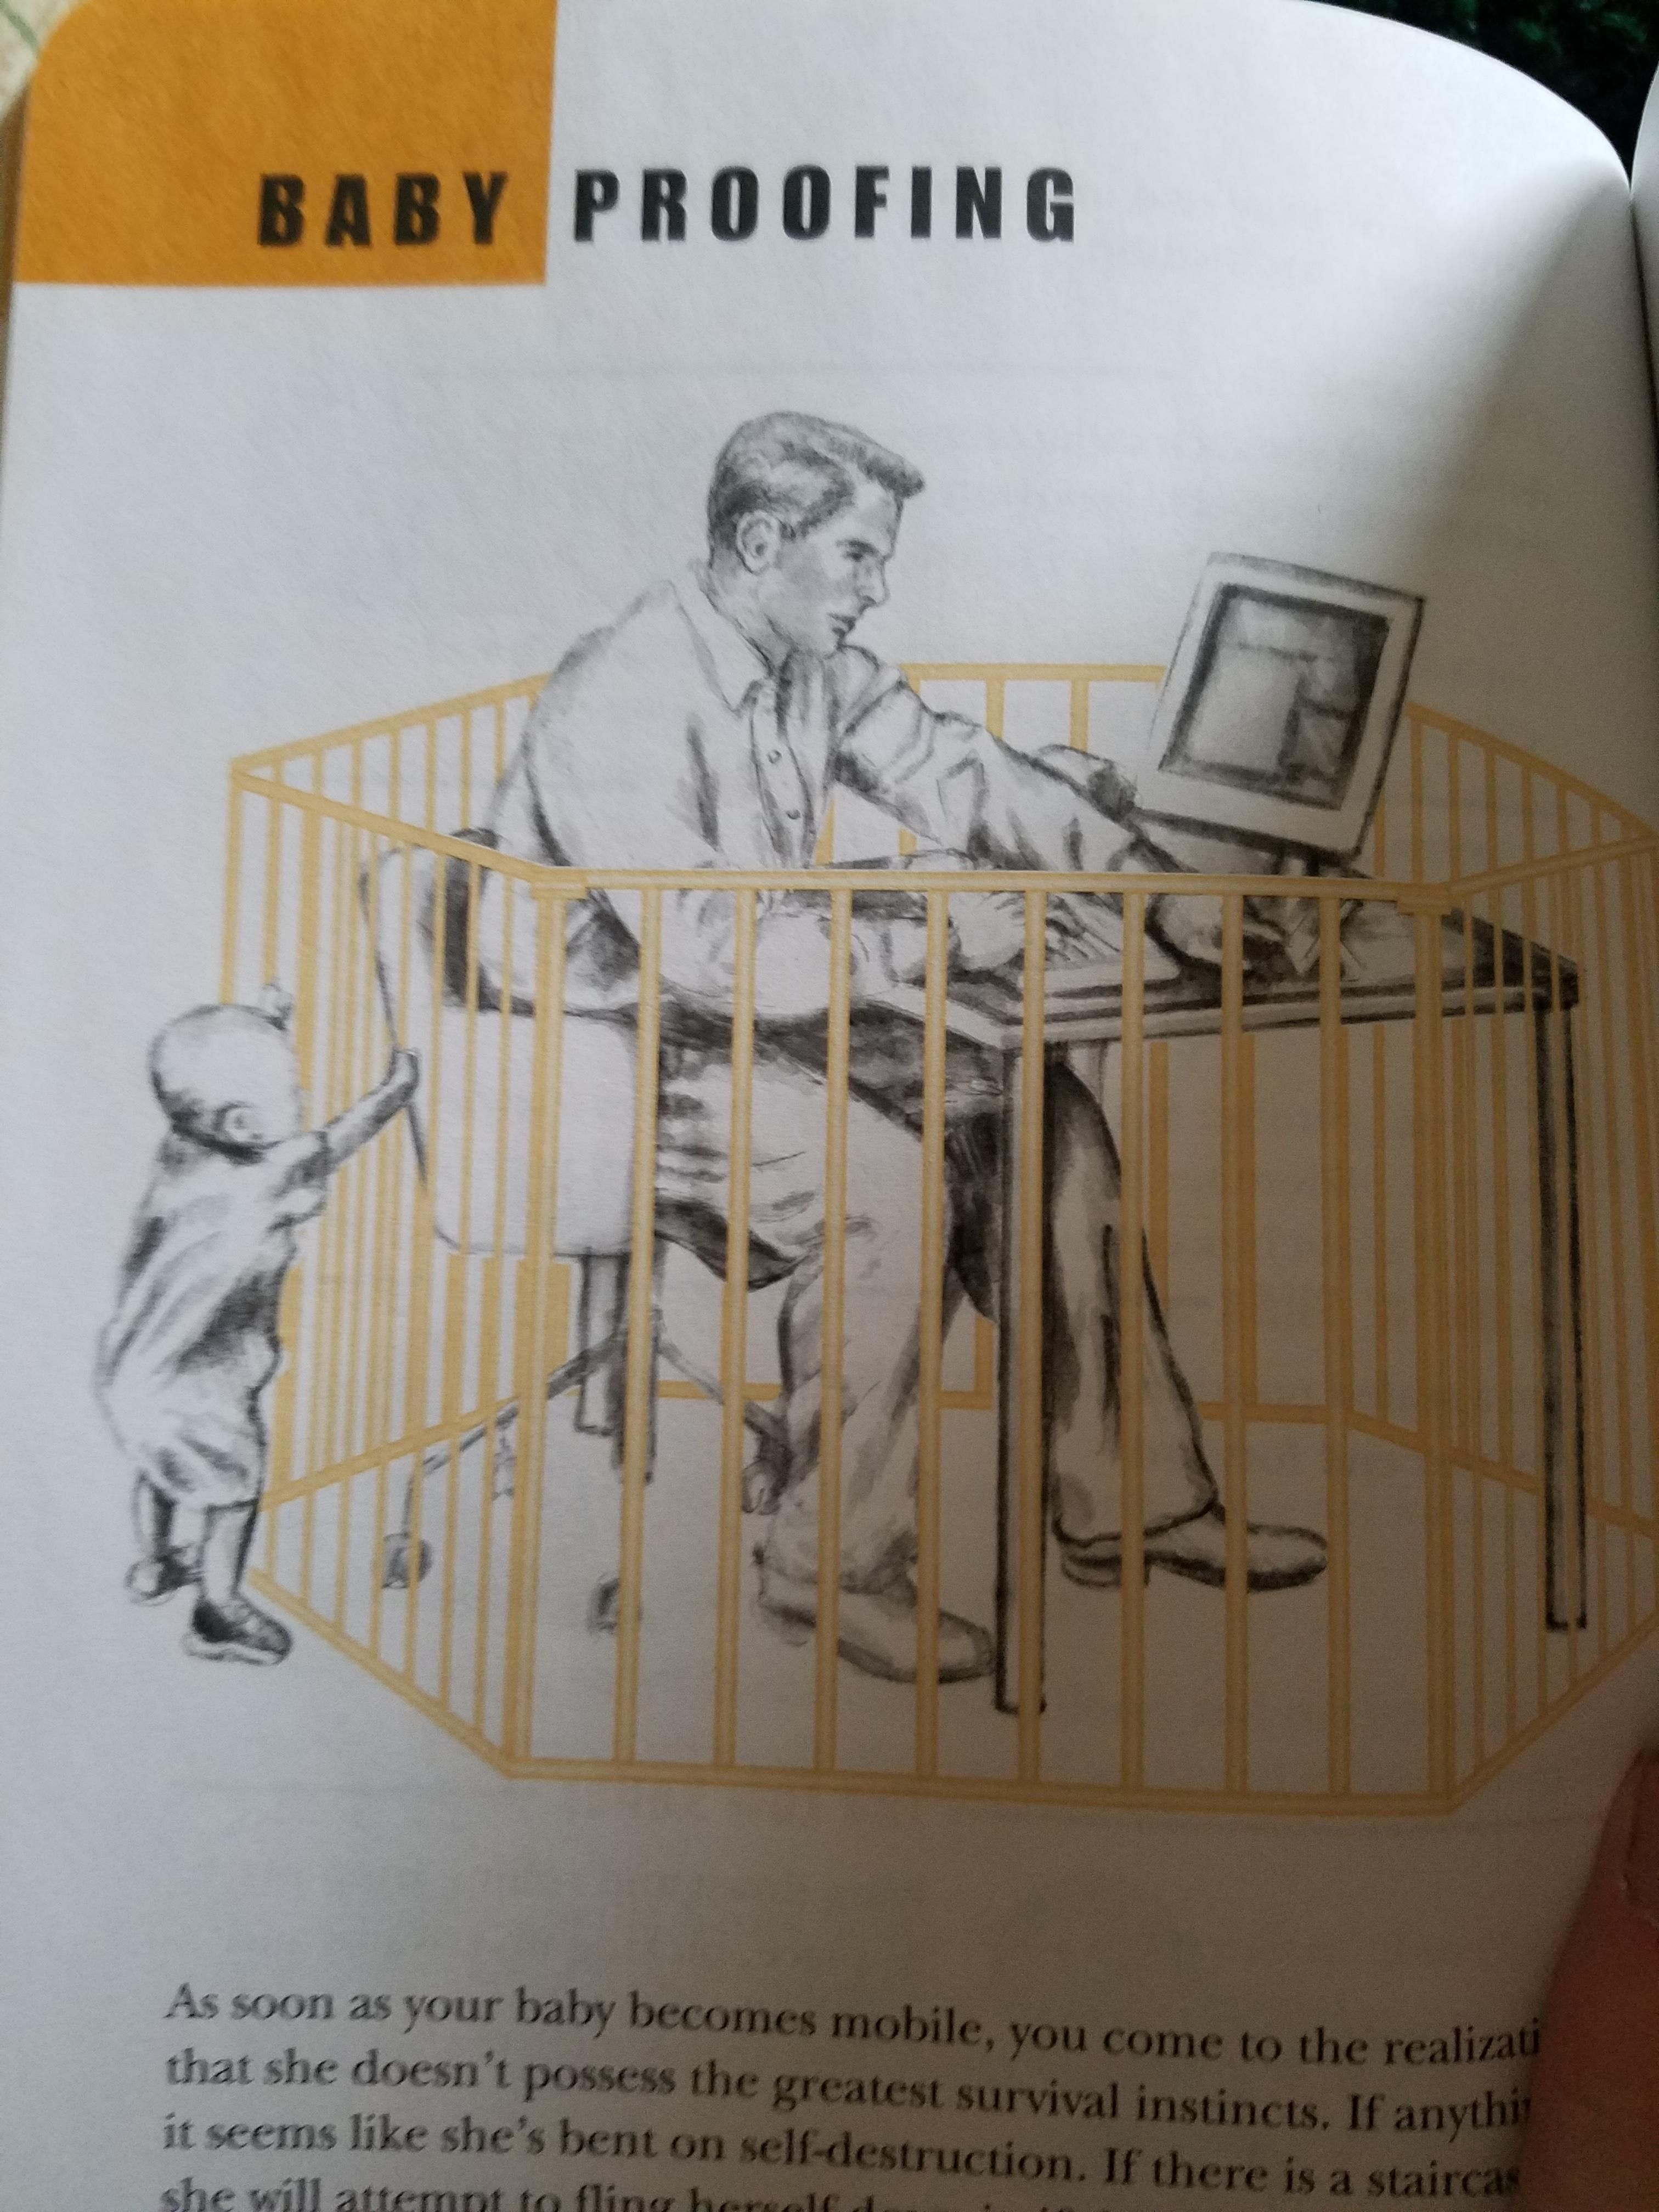 This genius Dad idea from a parenting book